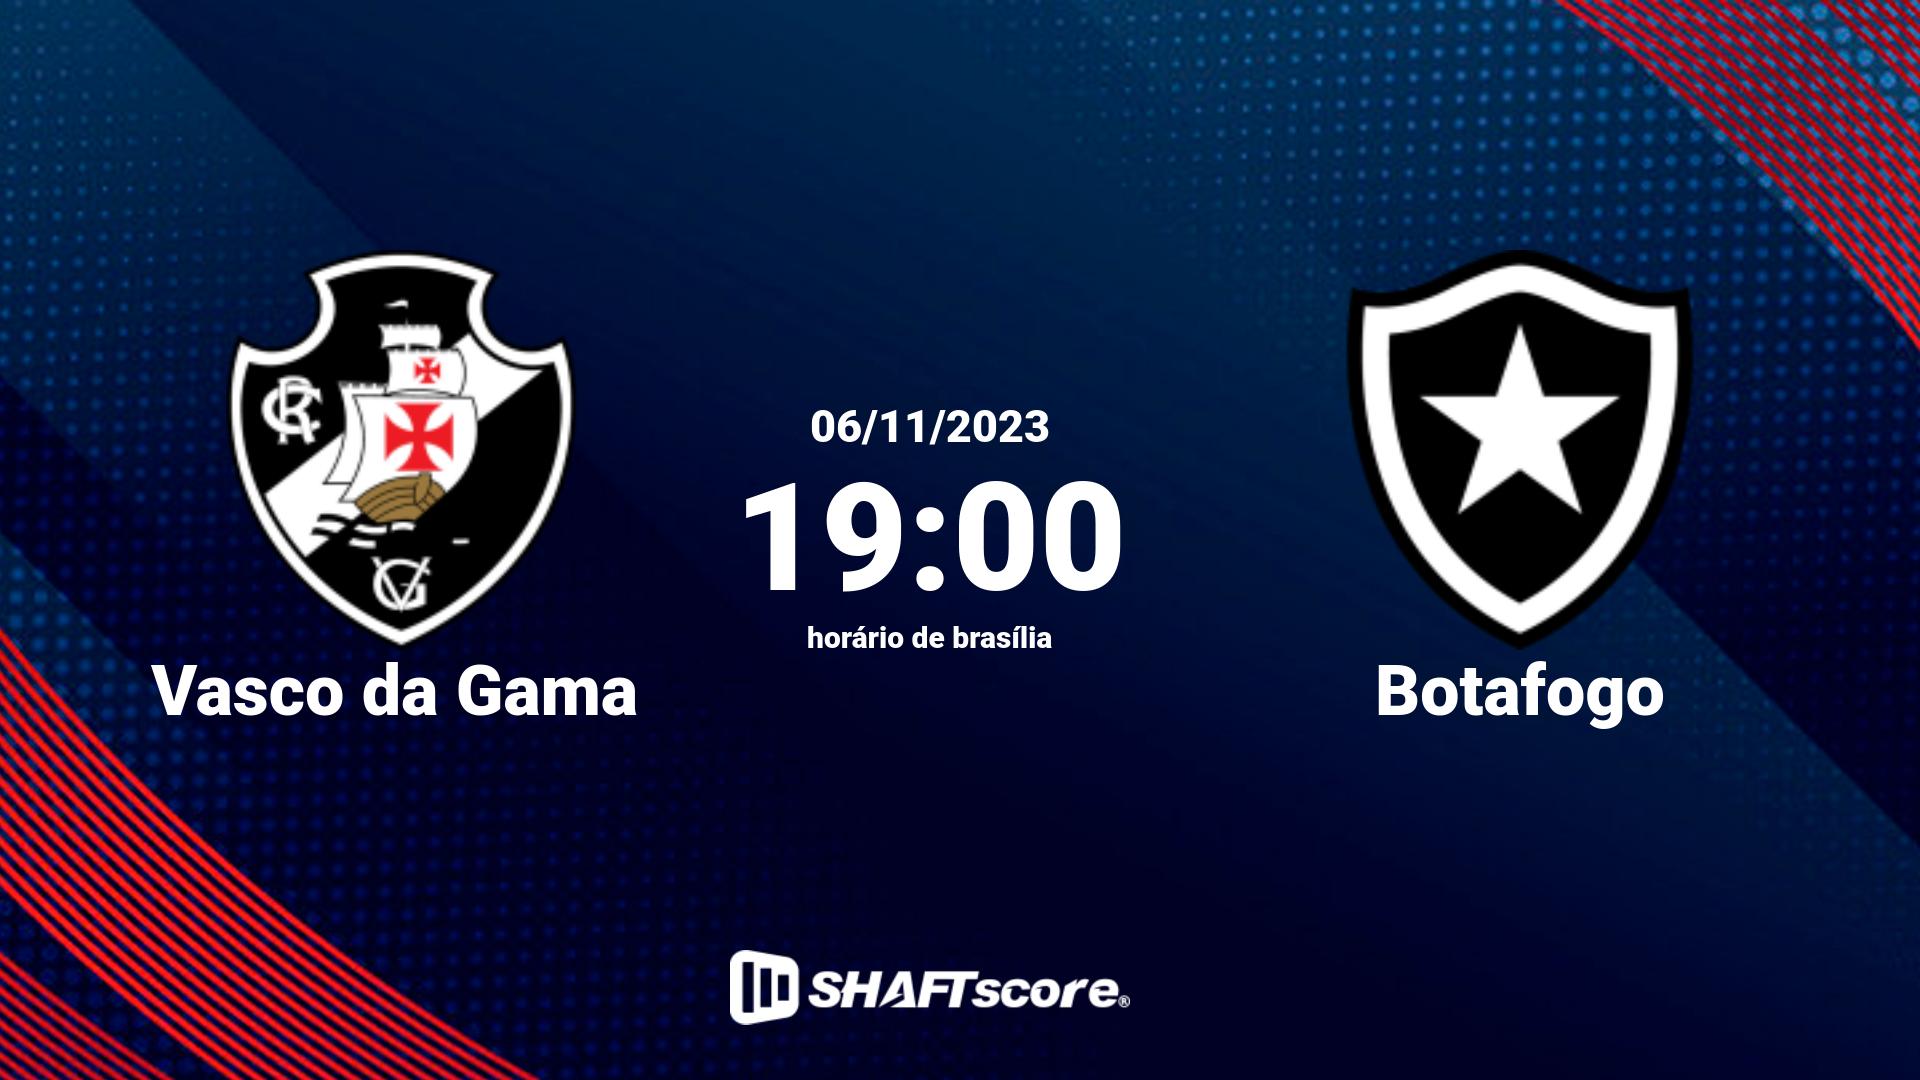 Estatísticas do jogo Vasco da Gama vs Botafogo 06.11 19:00